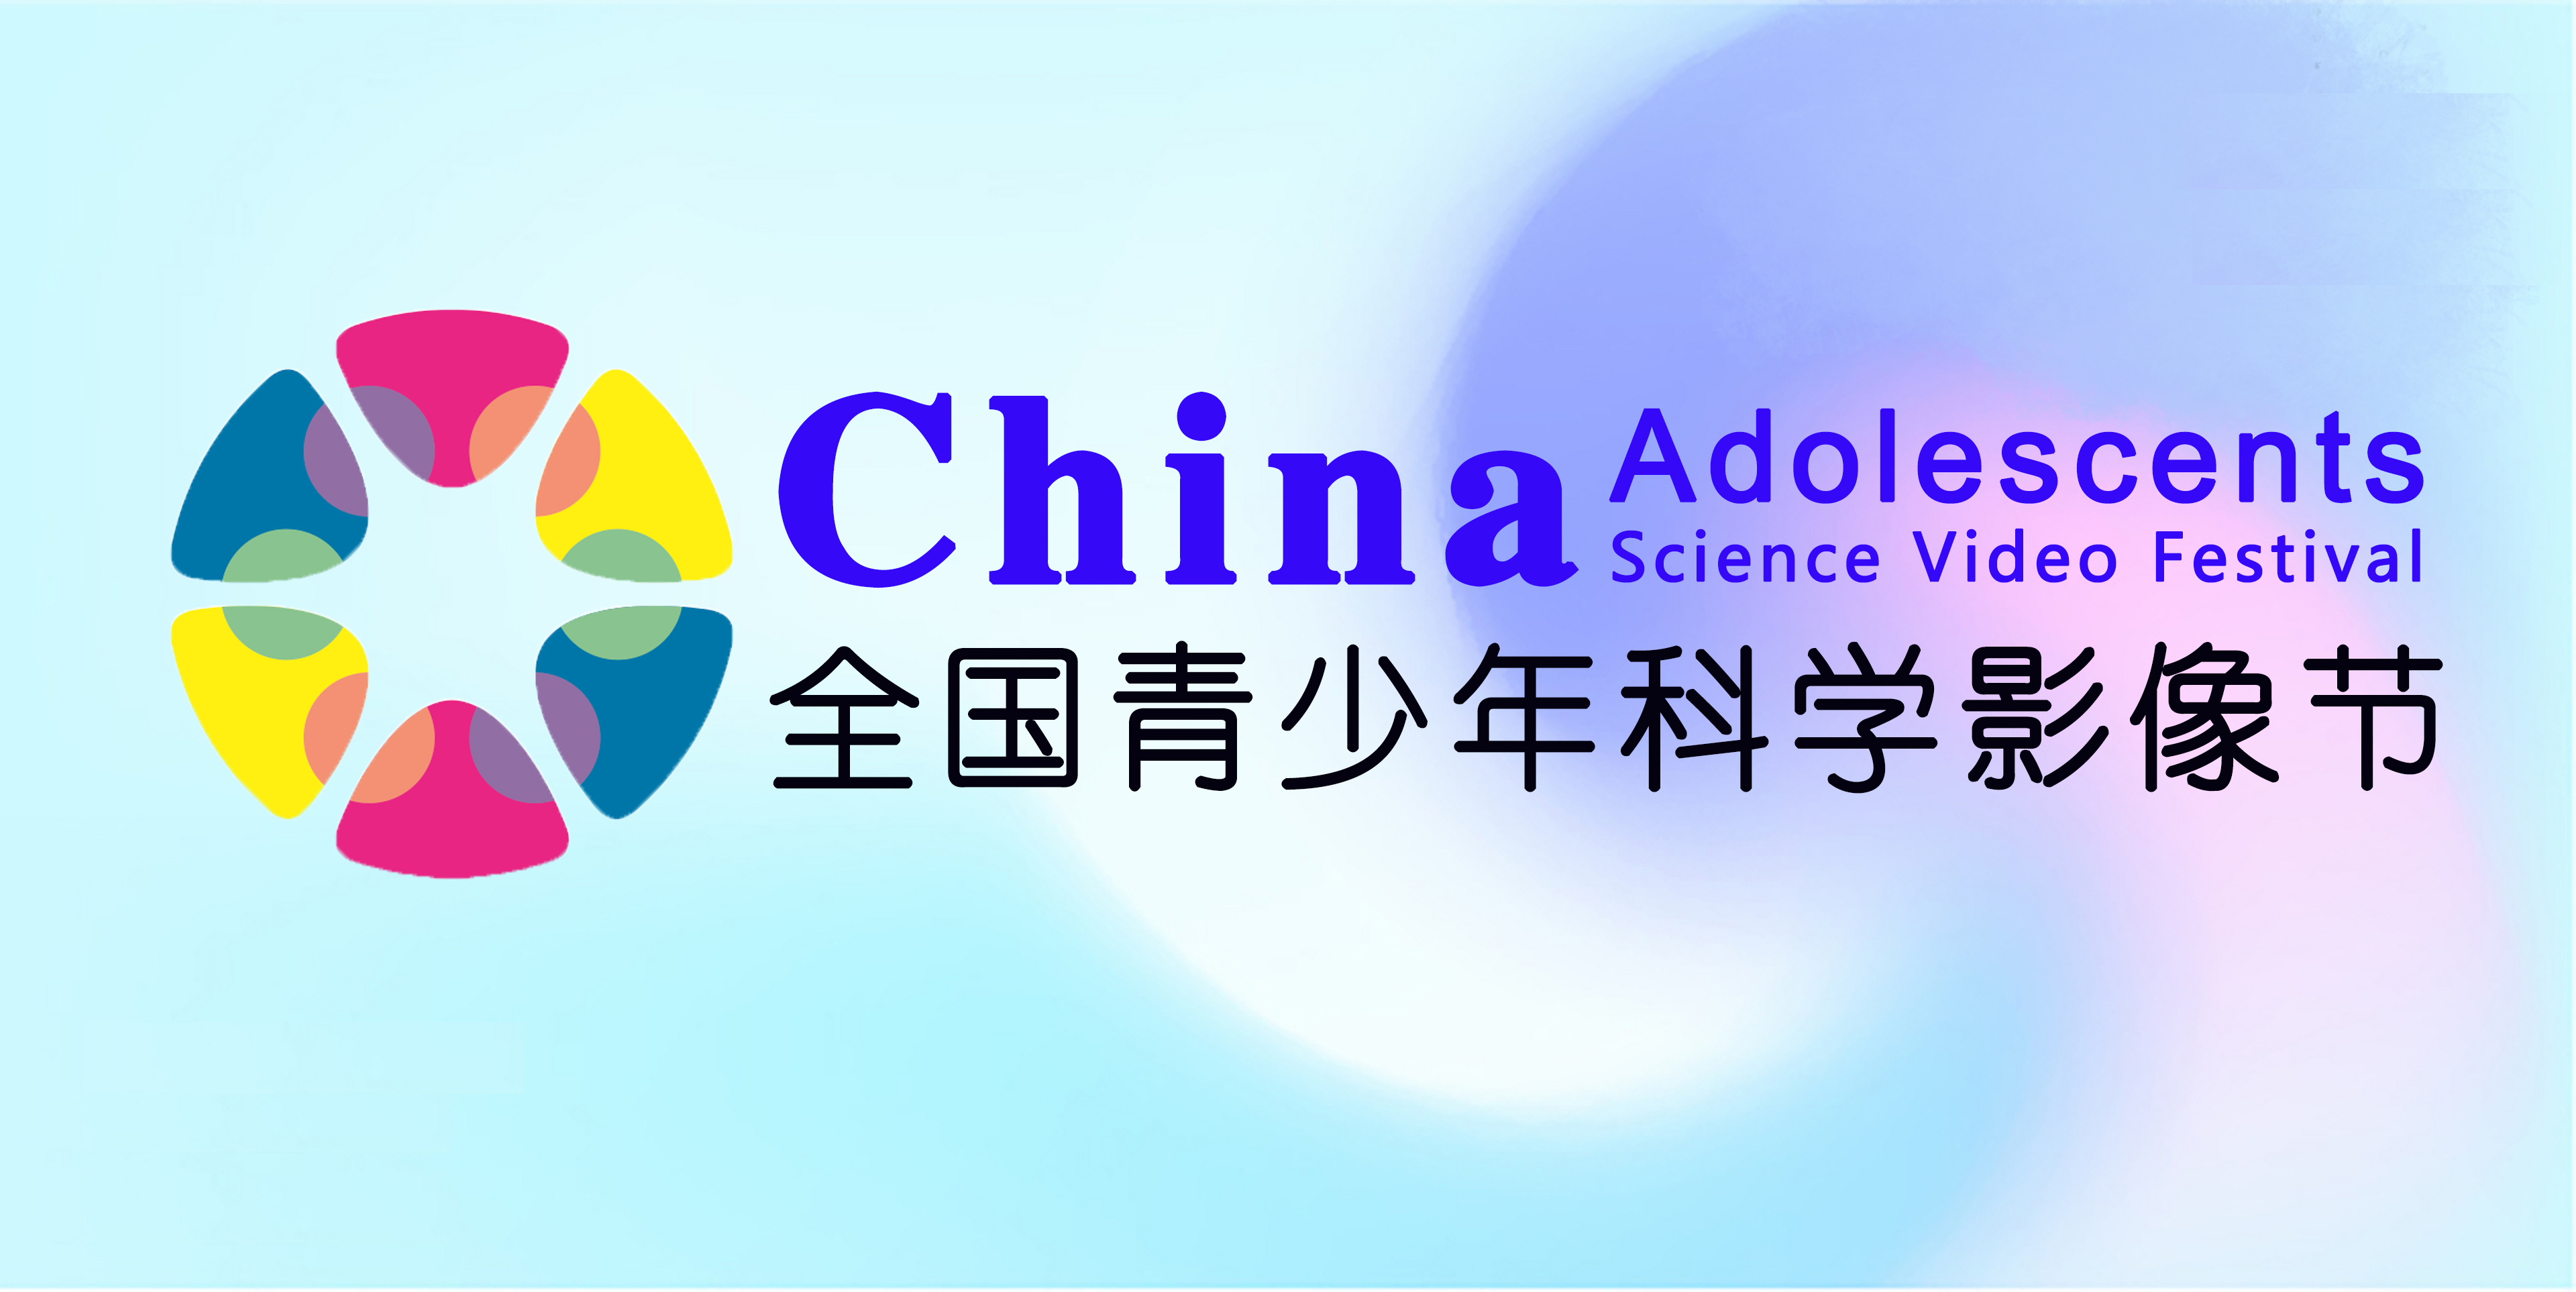 中國青少年科技教育工作者協會